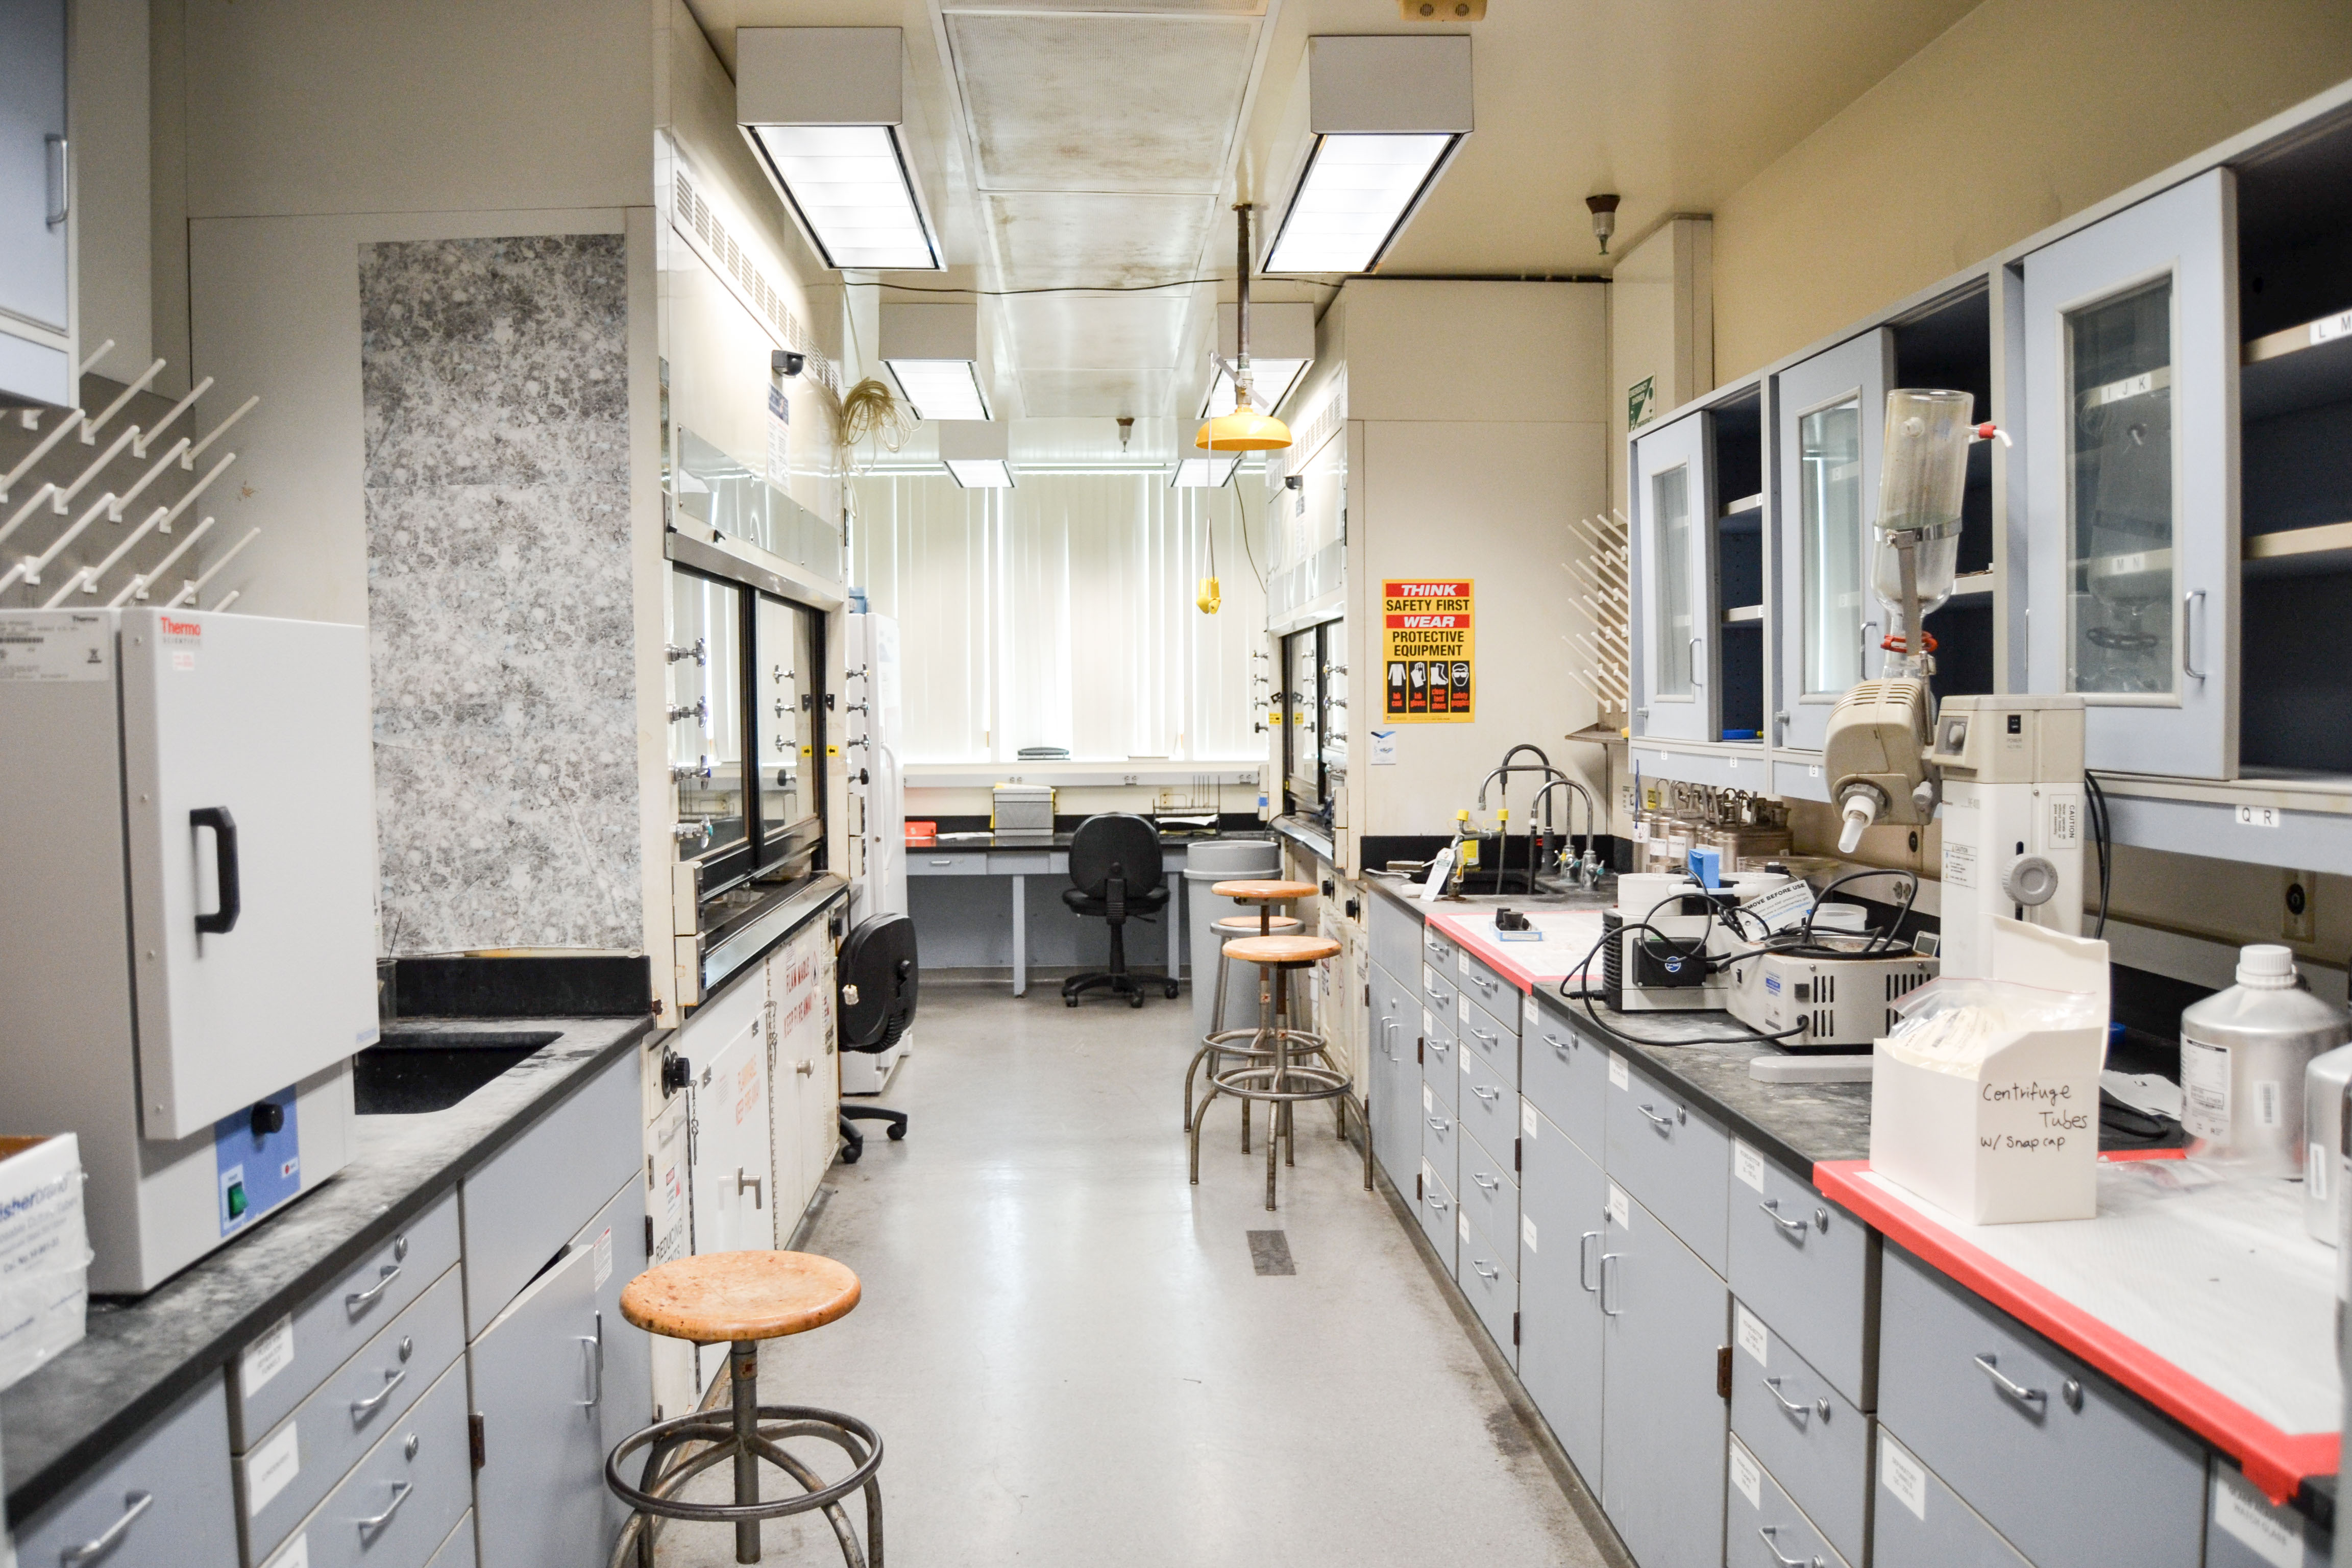 Organized chem lab